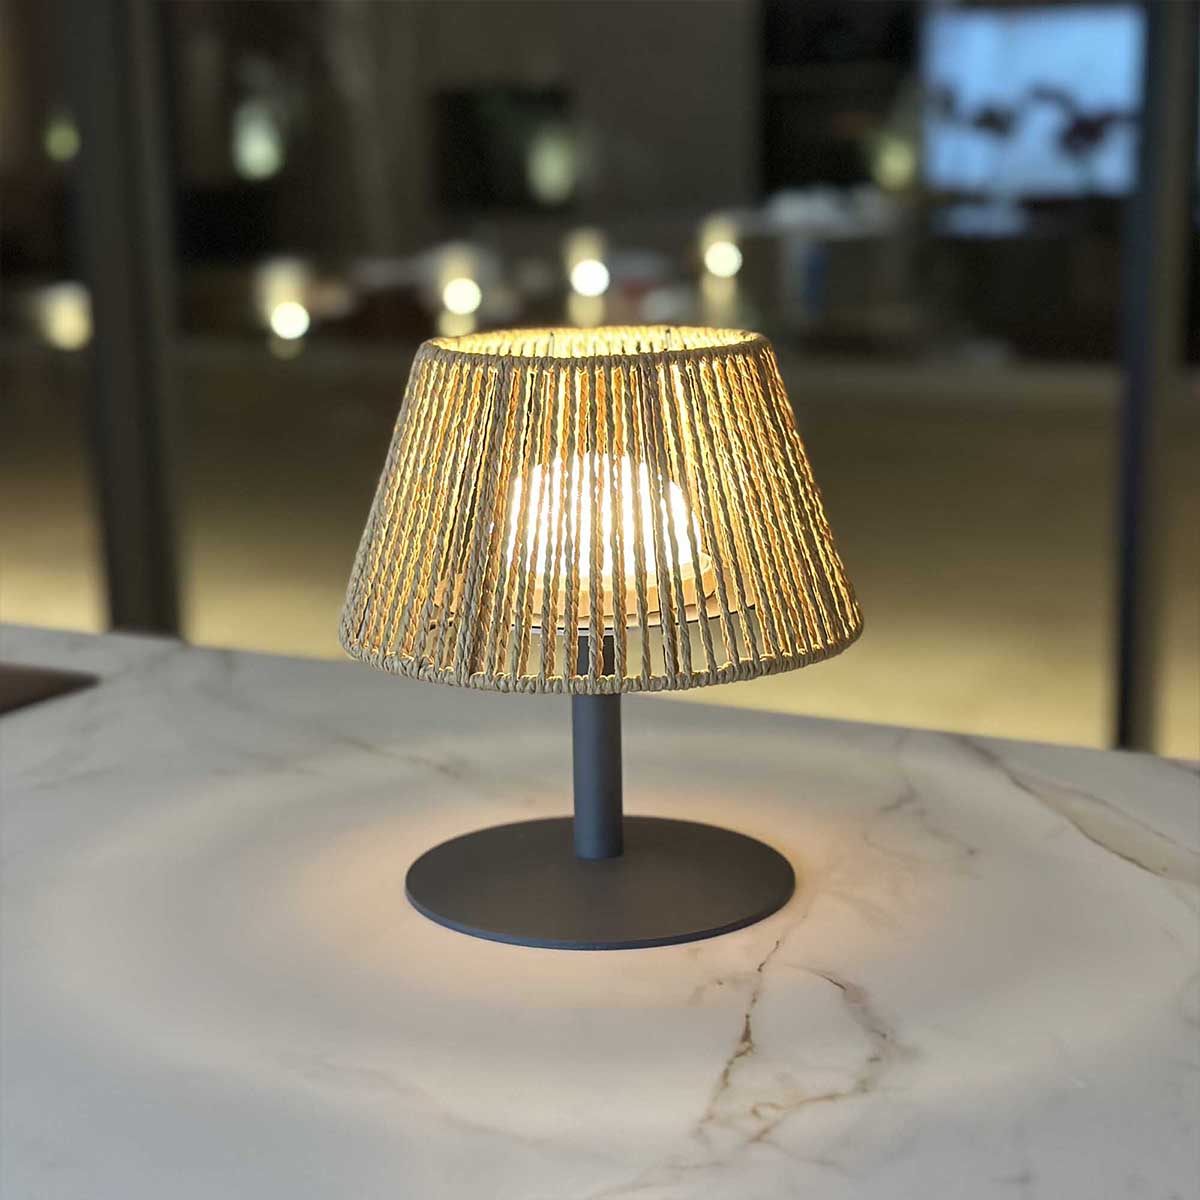 Kabellose Tischlampe aus Bast natur LED warmweiß/weiß dimmbar STANDY MINI RAFFY H22cm